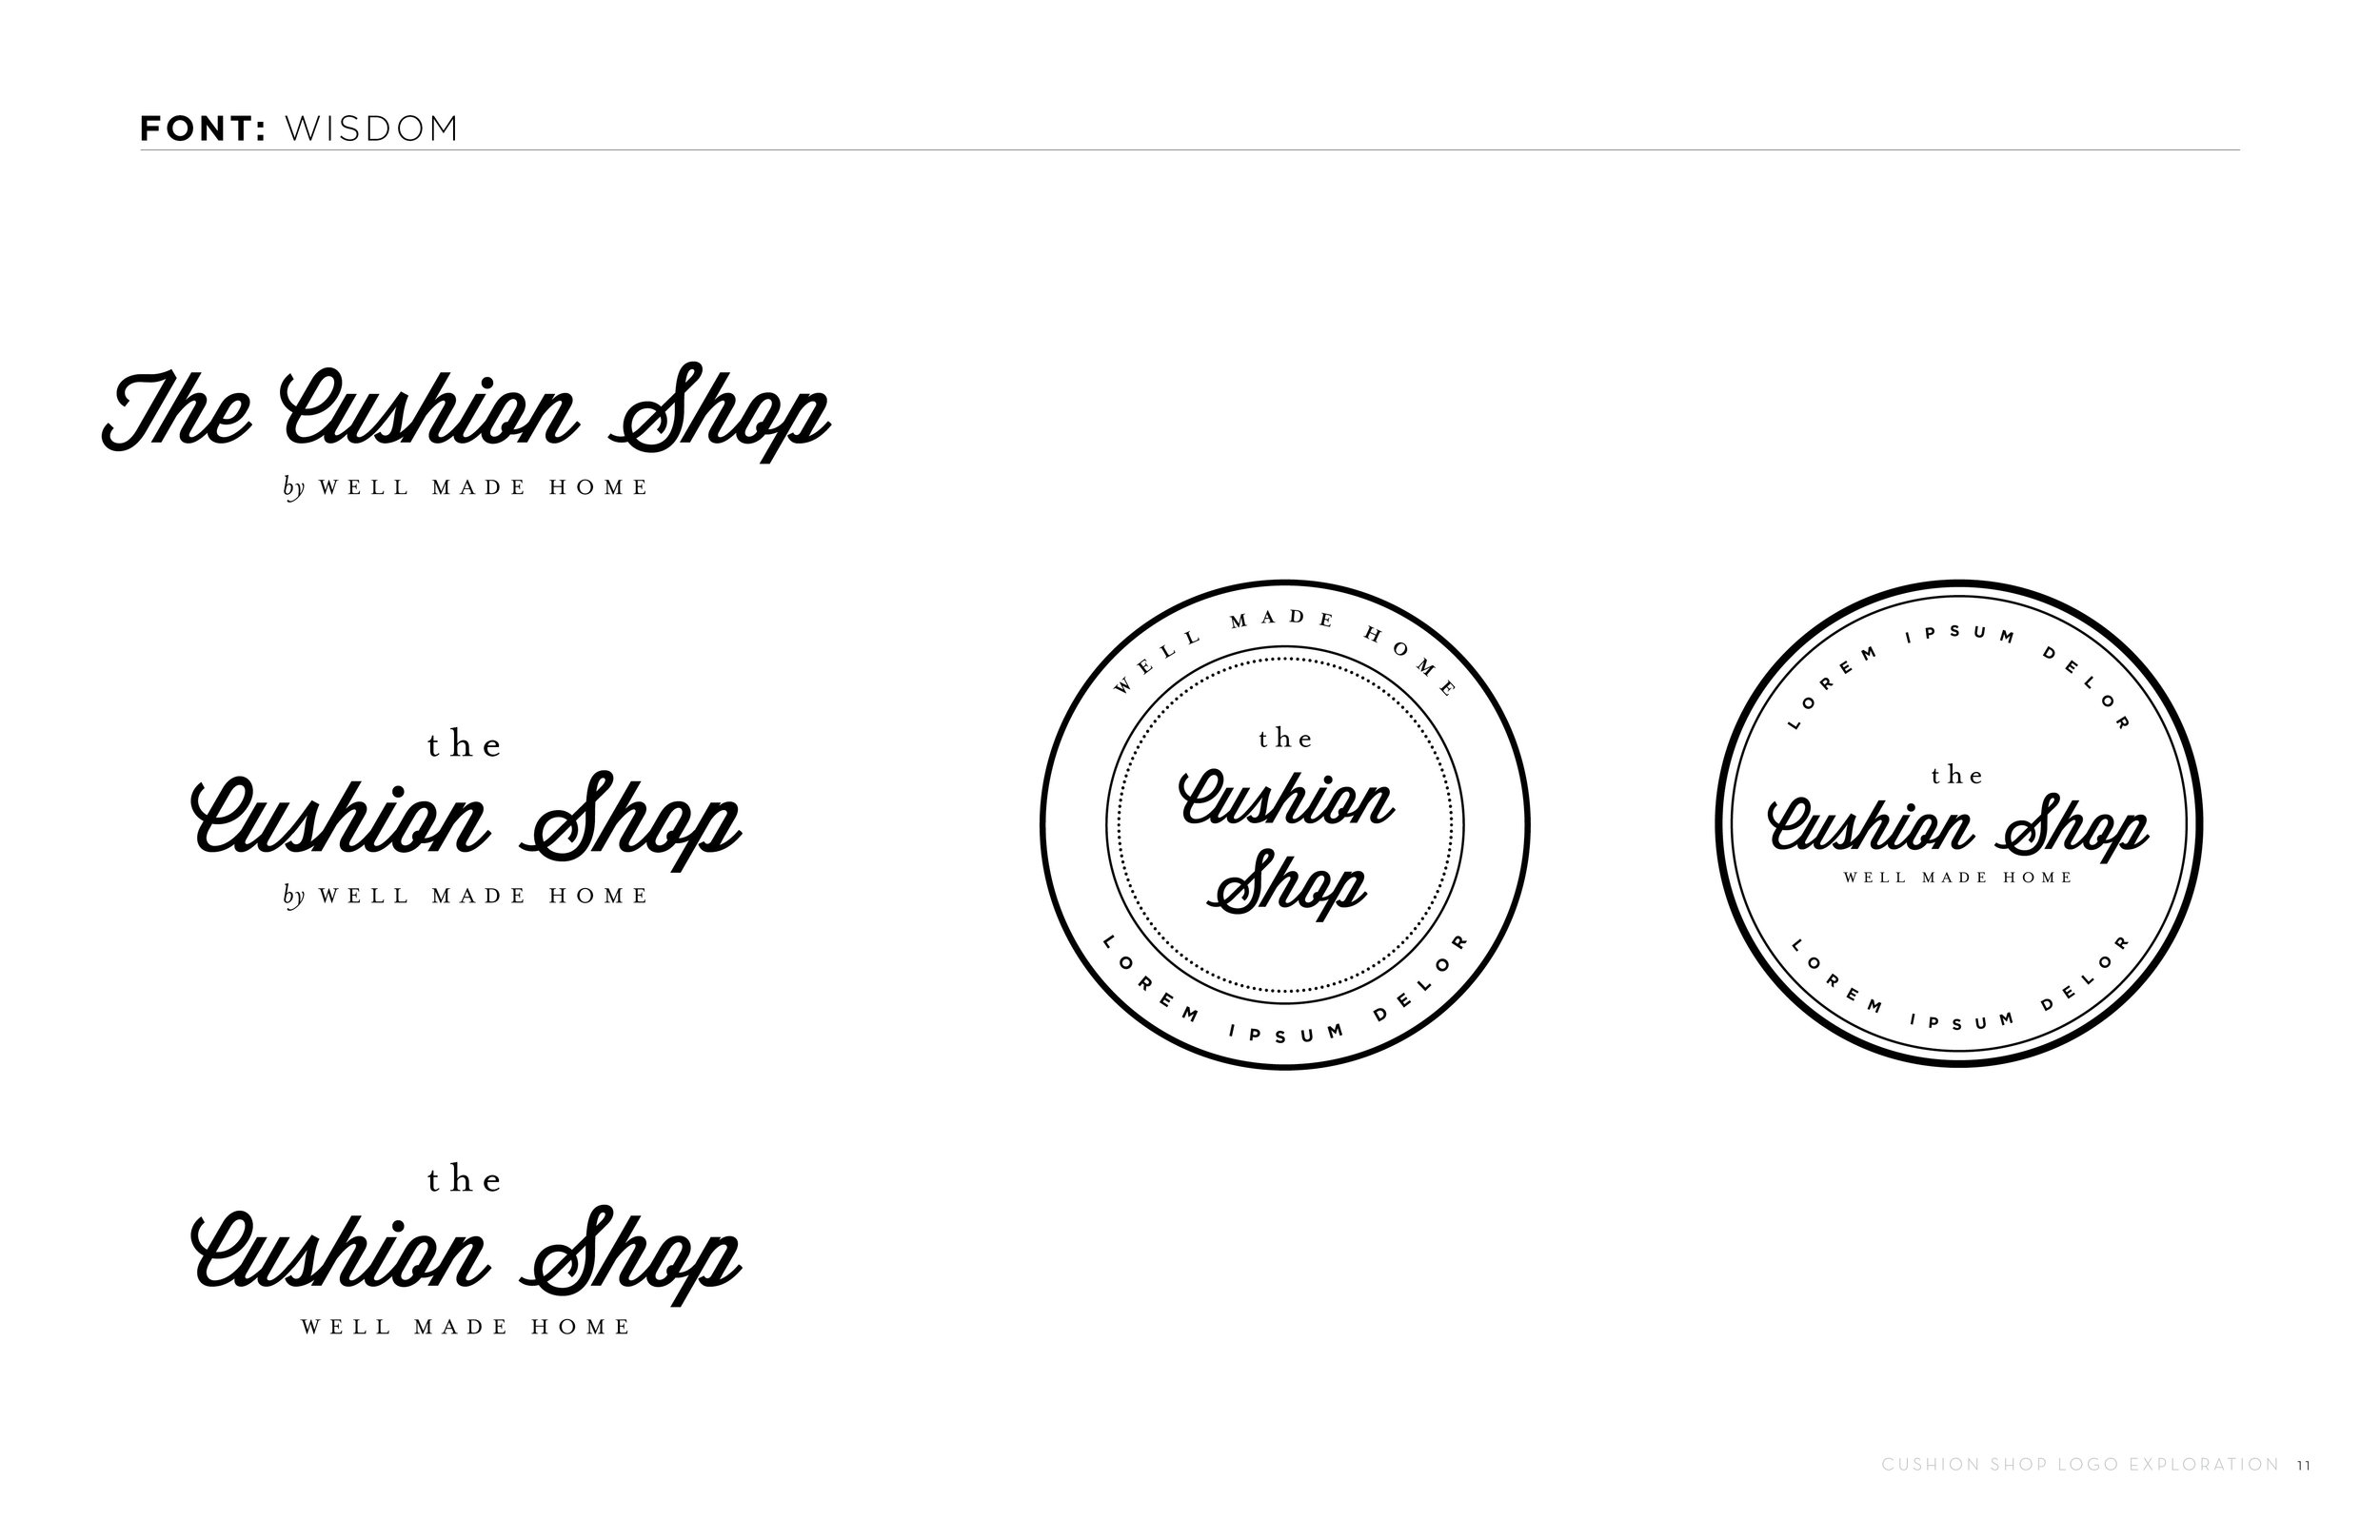 Cushion Shop_Logo Concepts_R10_11.jpg